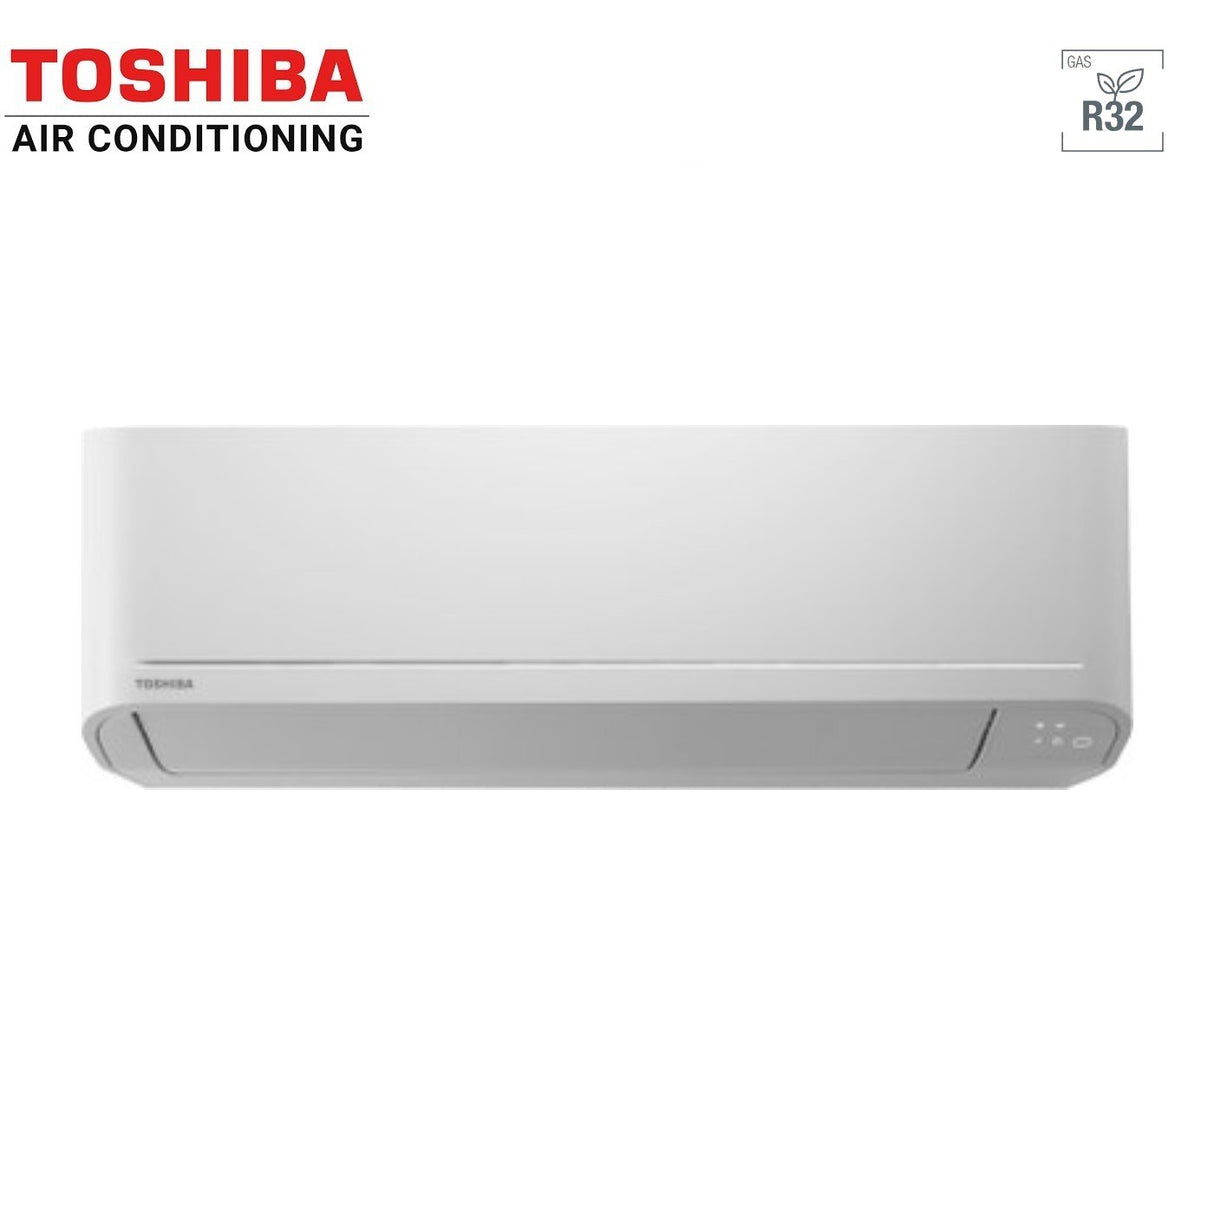 immagine-3-toshiba-climatizzatore-condizionatore-toshiba-trial-split-inverter-serie-seiya-101010-999-ras-3m26u2avg-e-r-32-wi-fi-optional-100001000010000-900090009000